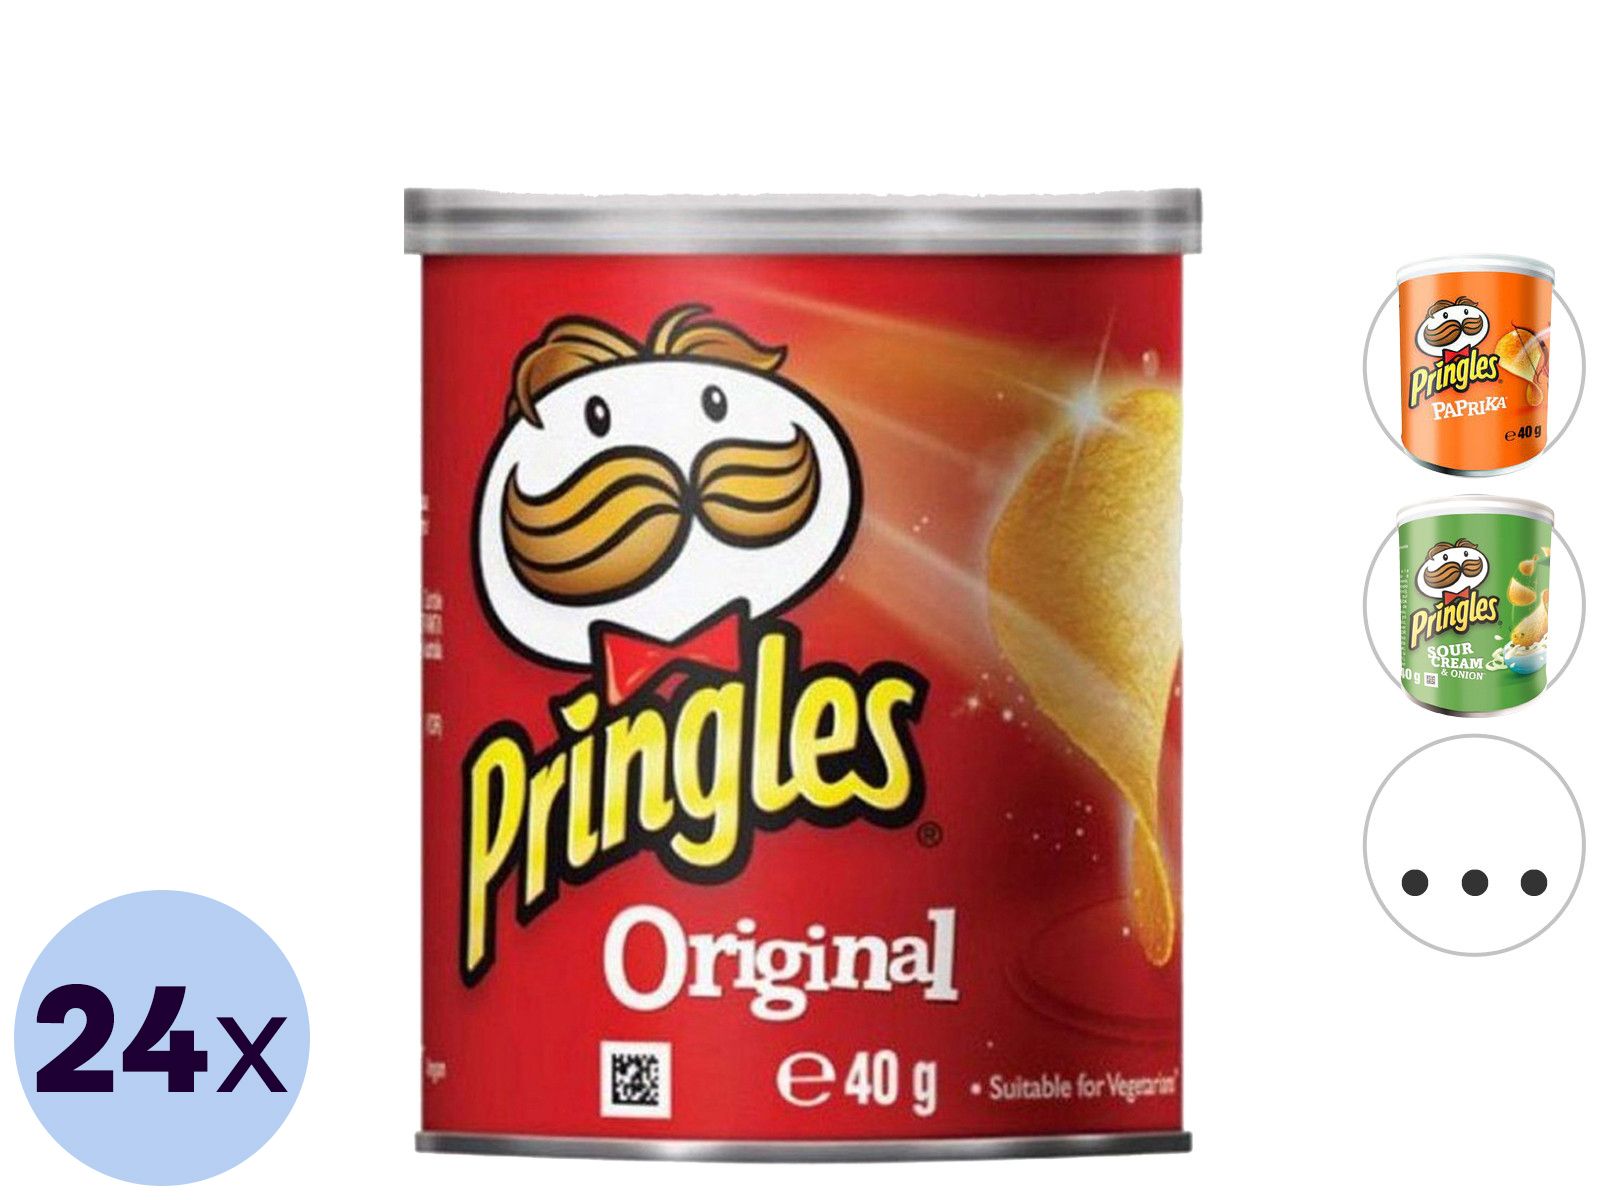 24x-pringles-chips-40-gr